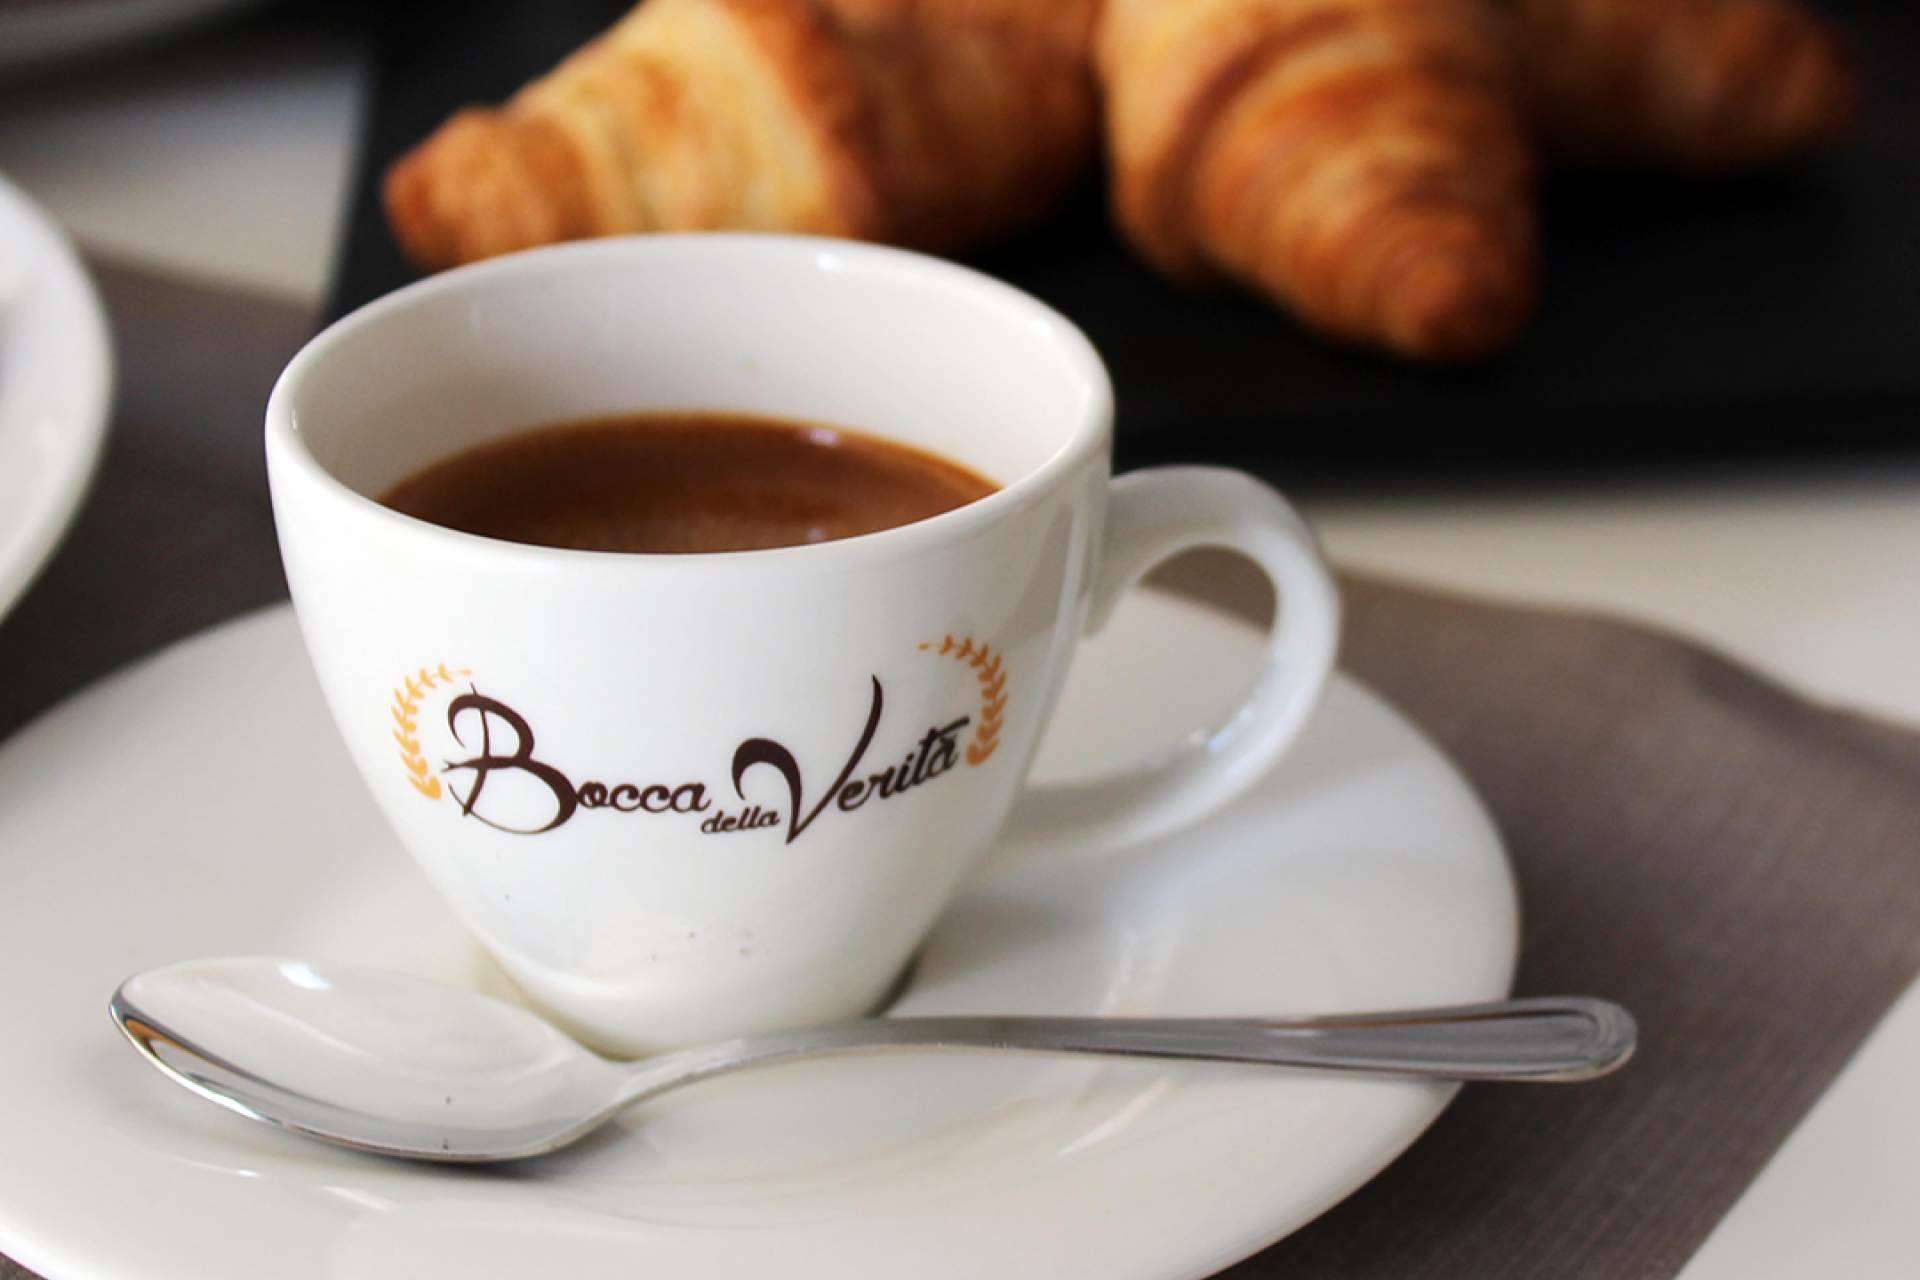 Bocca della Verità ofrece variedades de café descafeinado de gran calidad